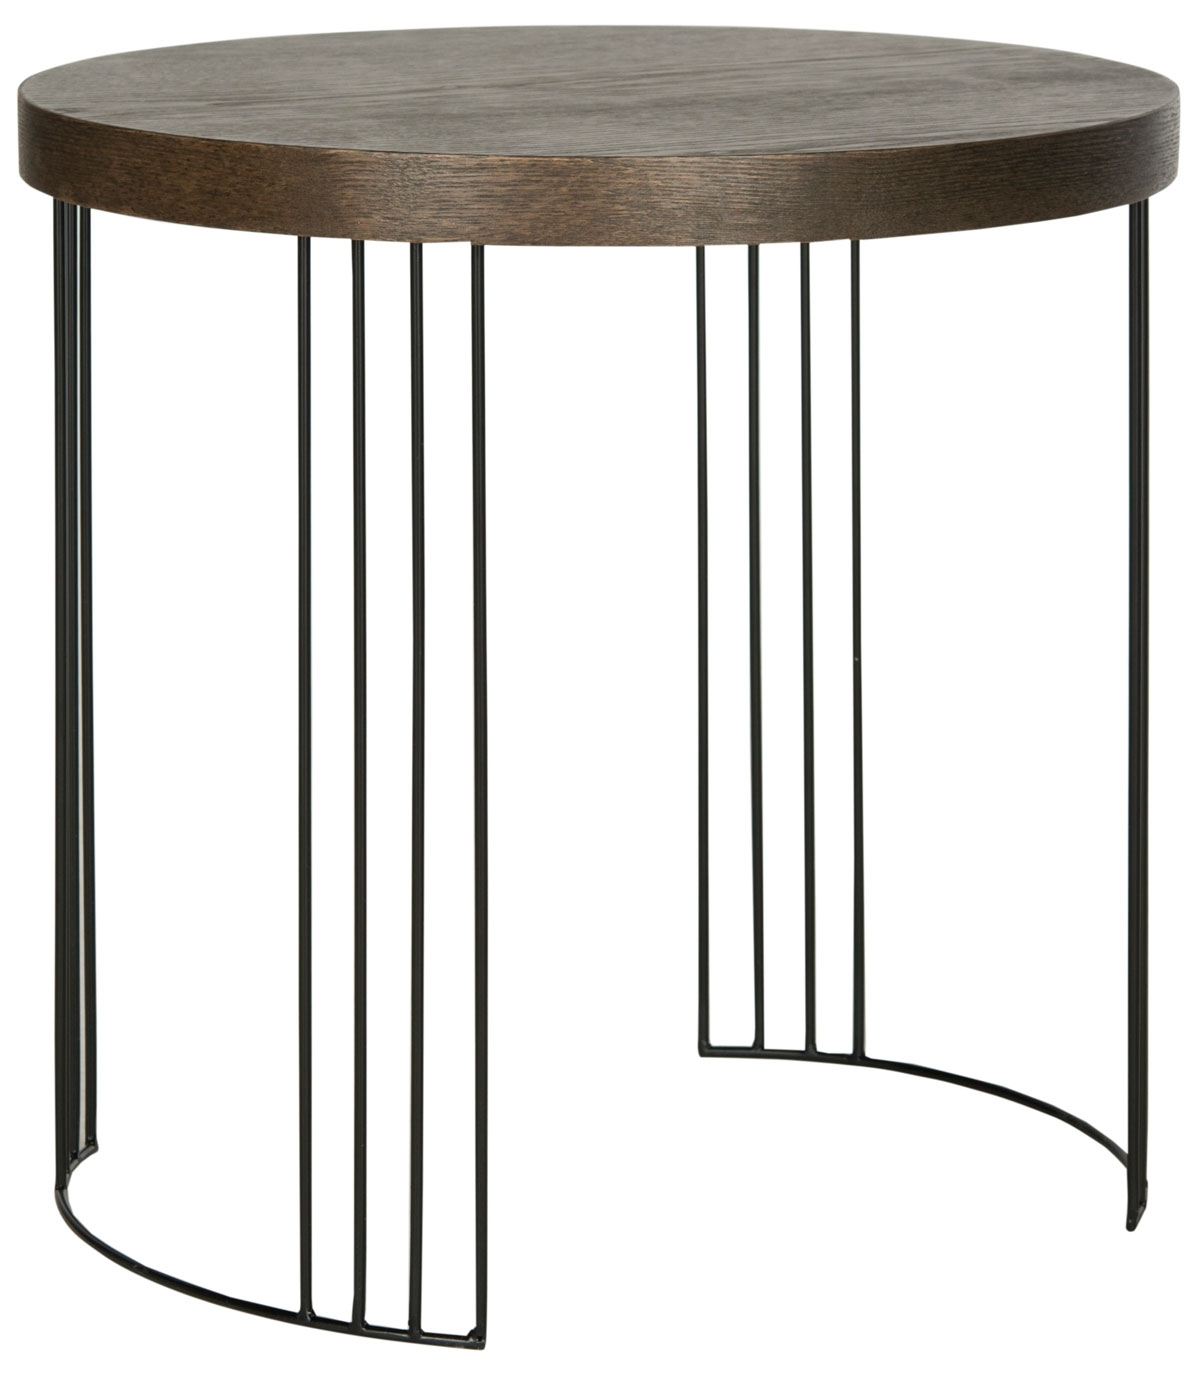 Kelly Mid Century Scandinavian Wood Side Table - Dark Brown/Black - Arlo Home - Image 1